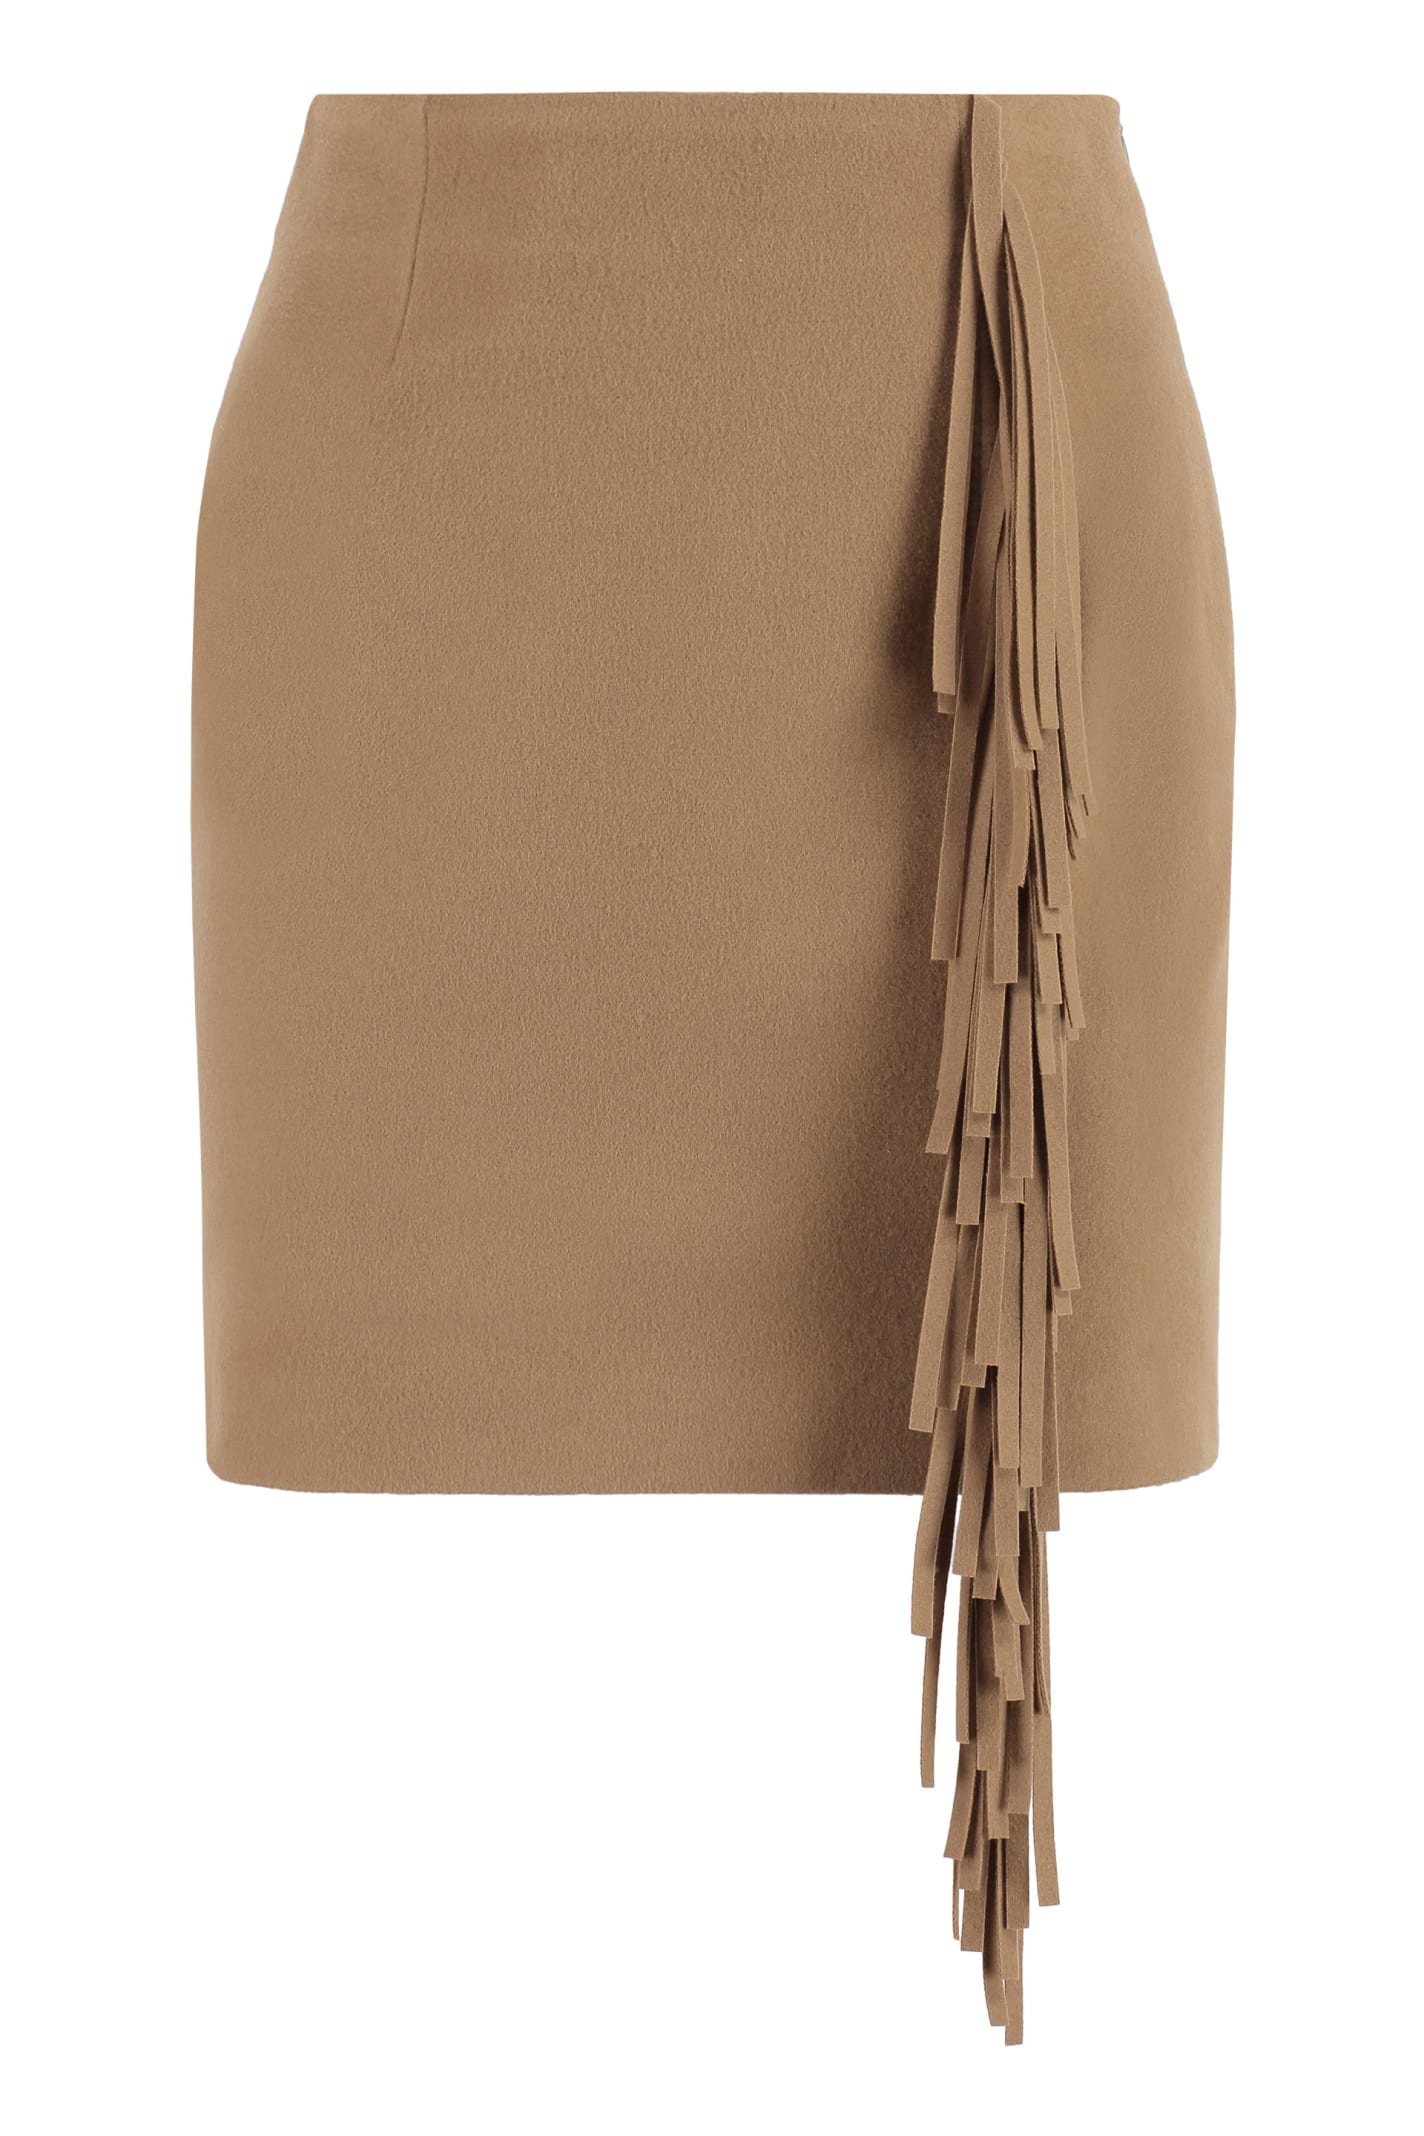 Federica Tosi Wool Mini Skirt